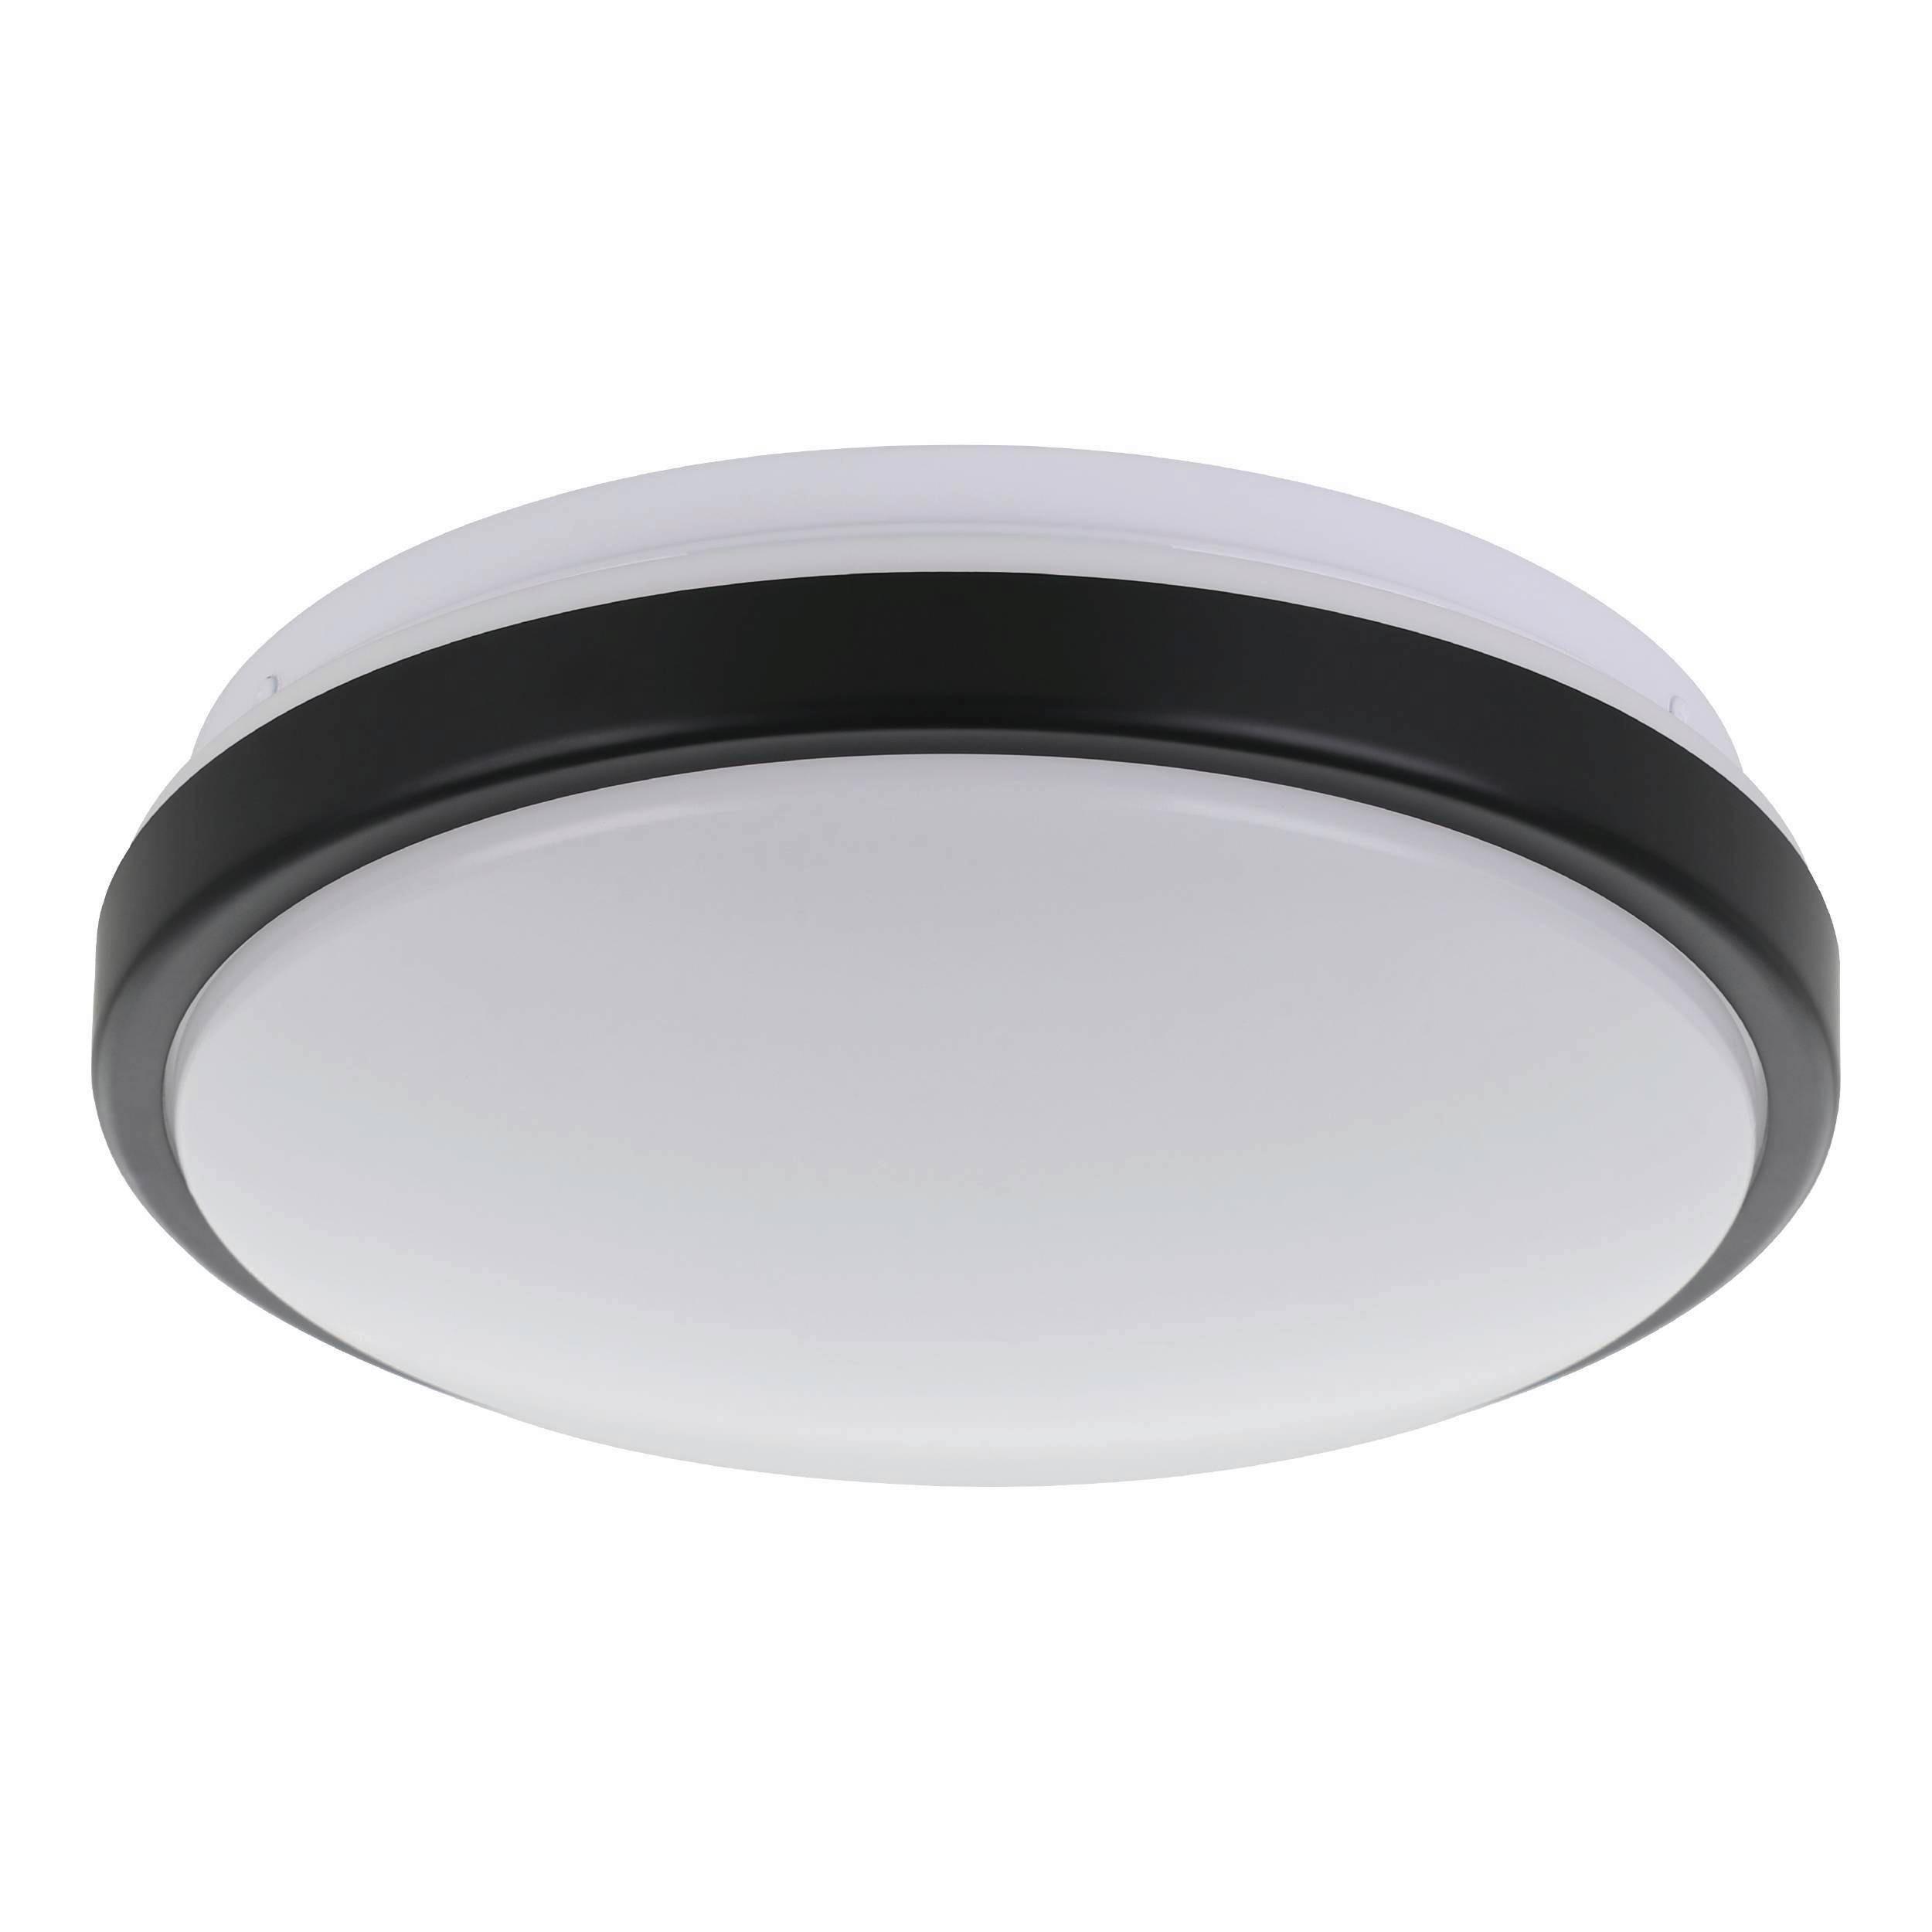 LED-Deckenleuchte Lezuza Ø 24,5 cm Schwarz/Weiß - Schwarz/Weiß, Basics, Kunststoff/Metall (24,5/9cm)